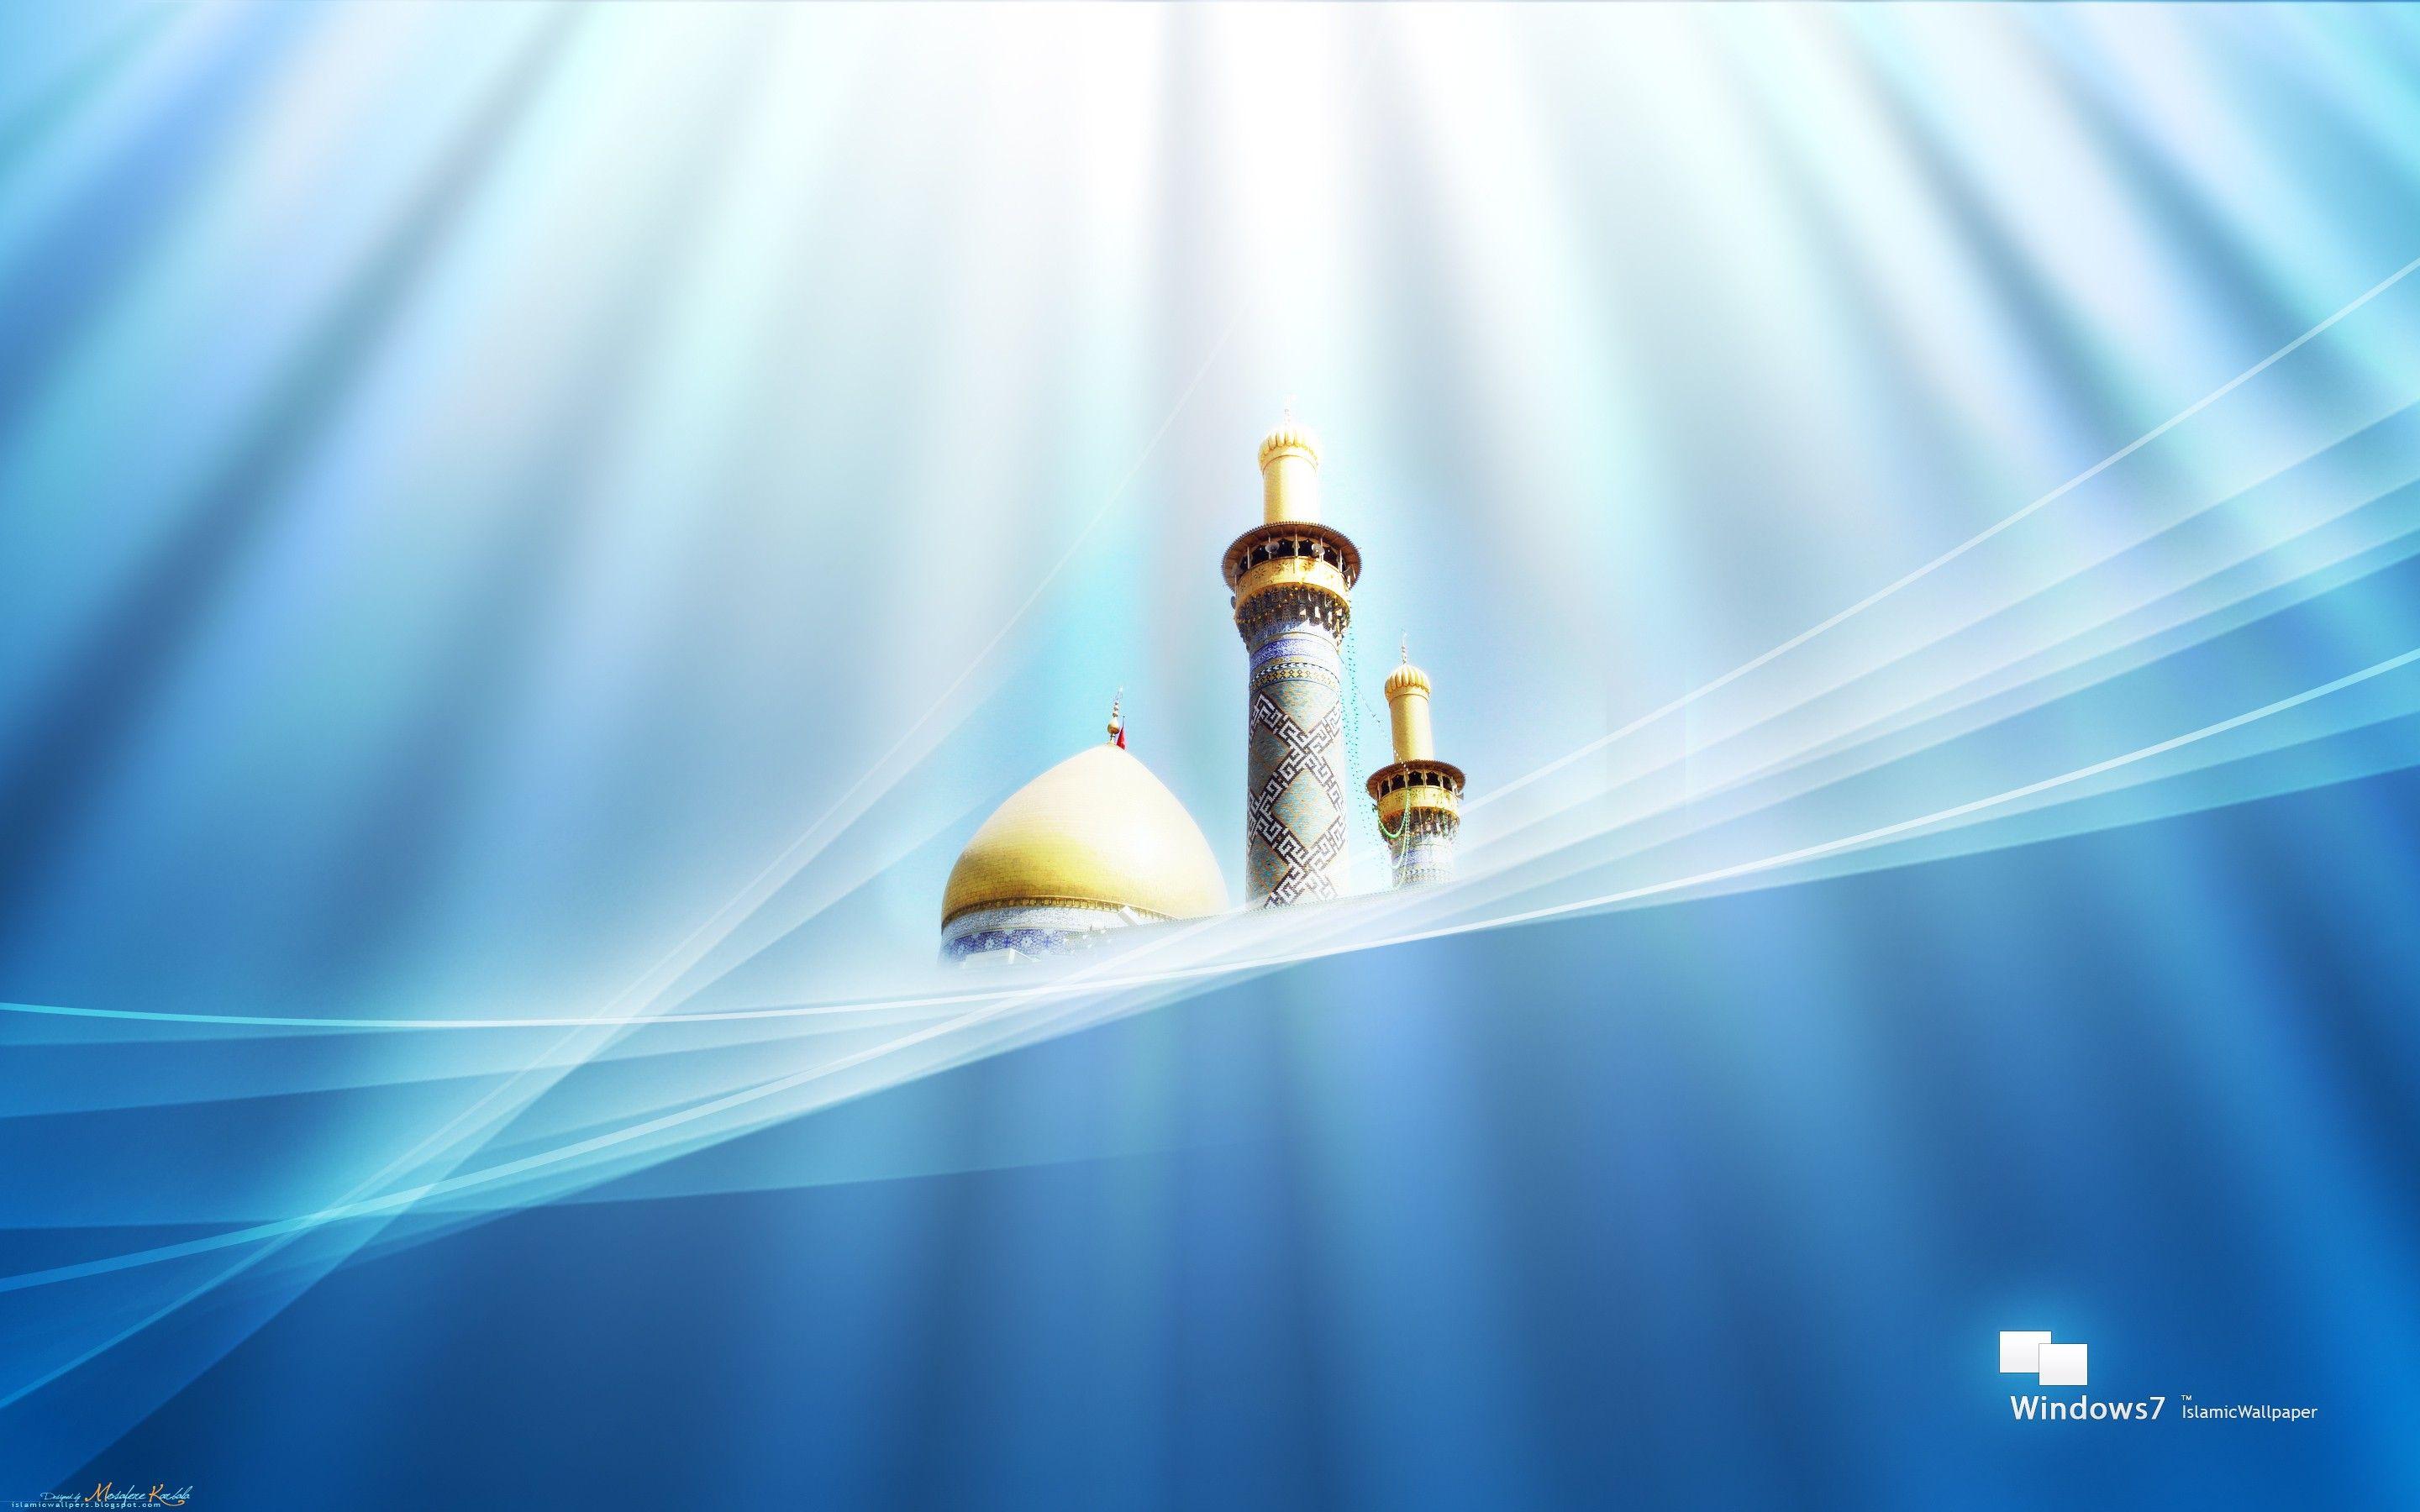 Islamic Backgrounds Image